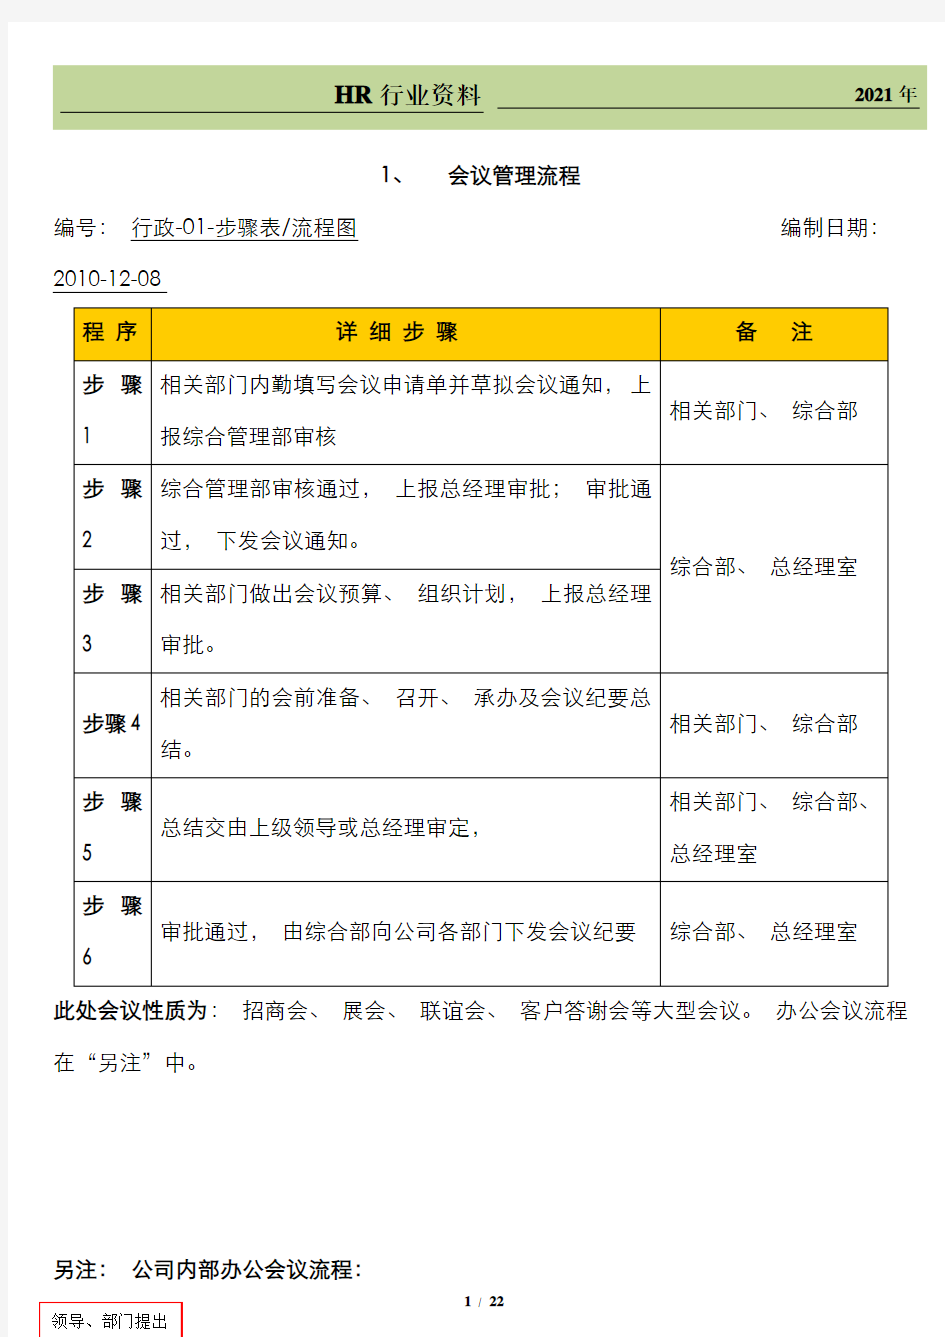 上海某公司行政管理流程